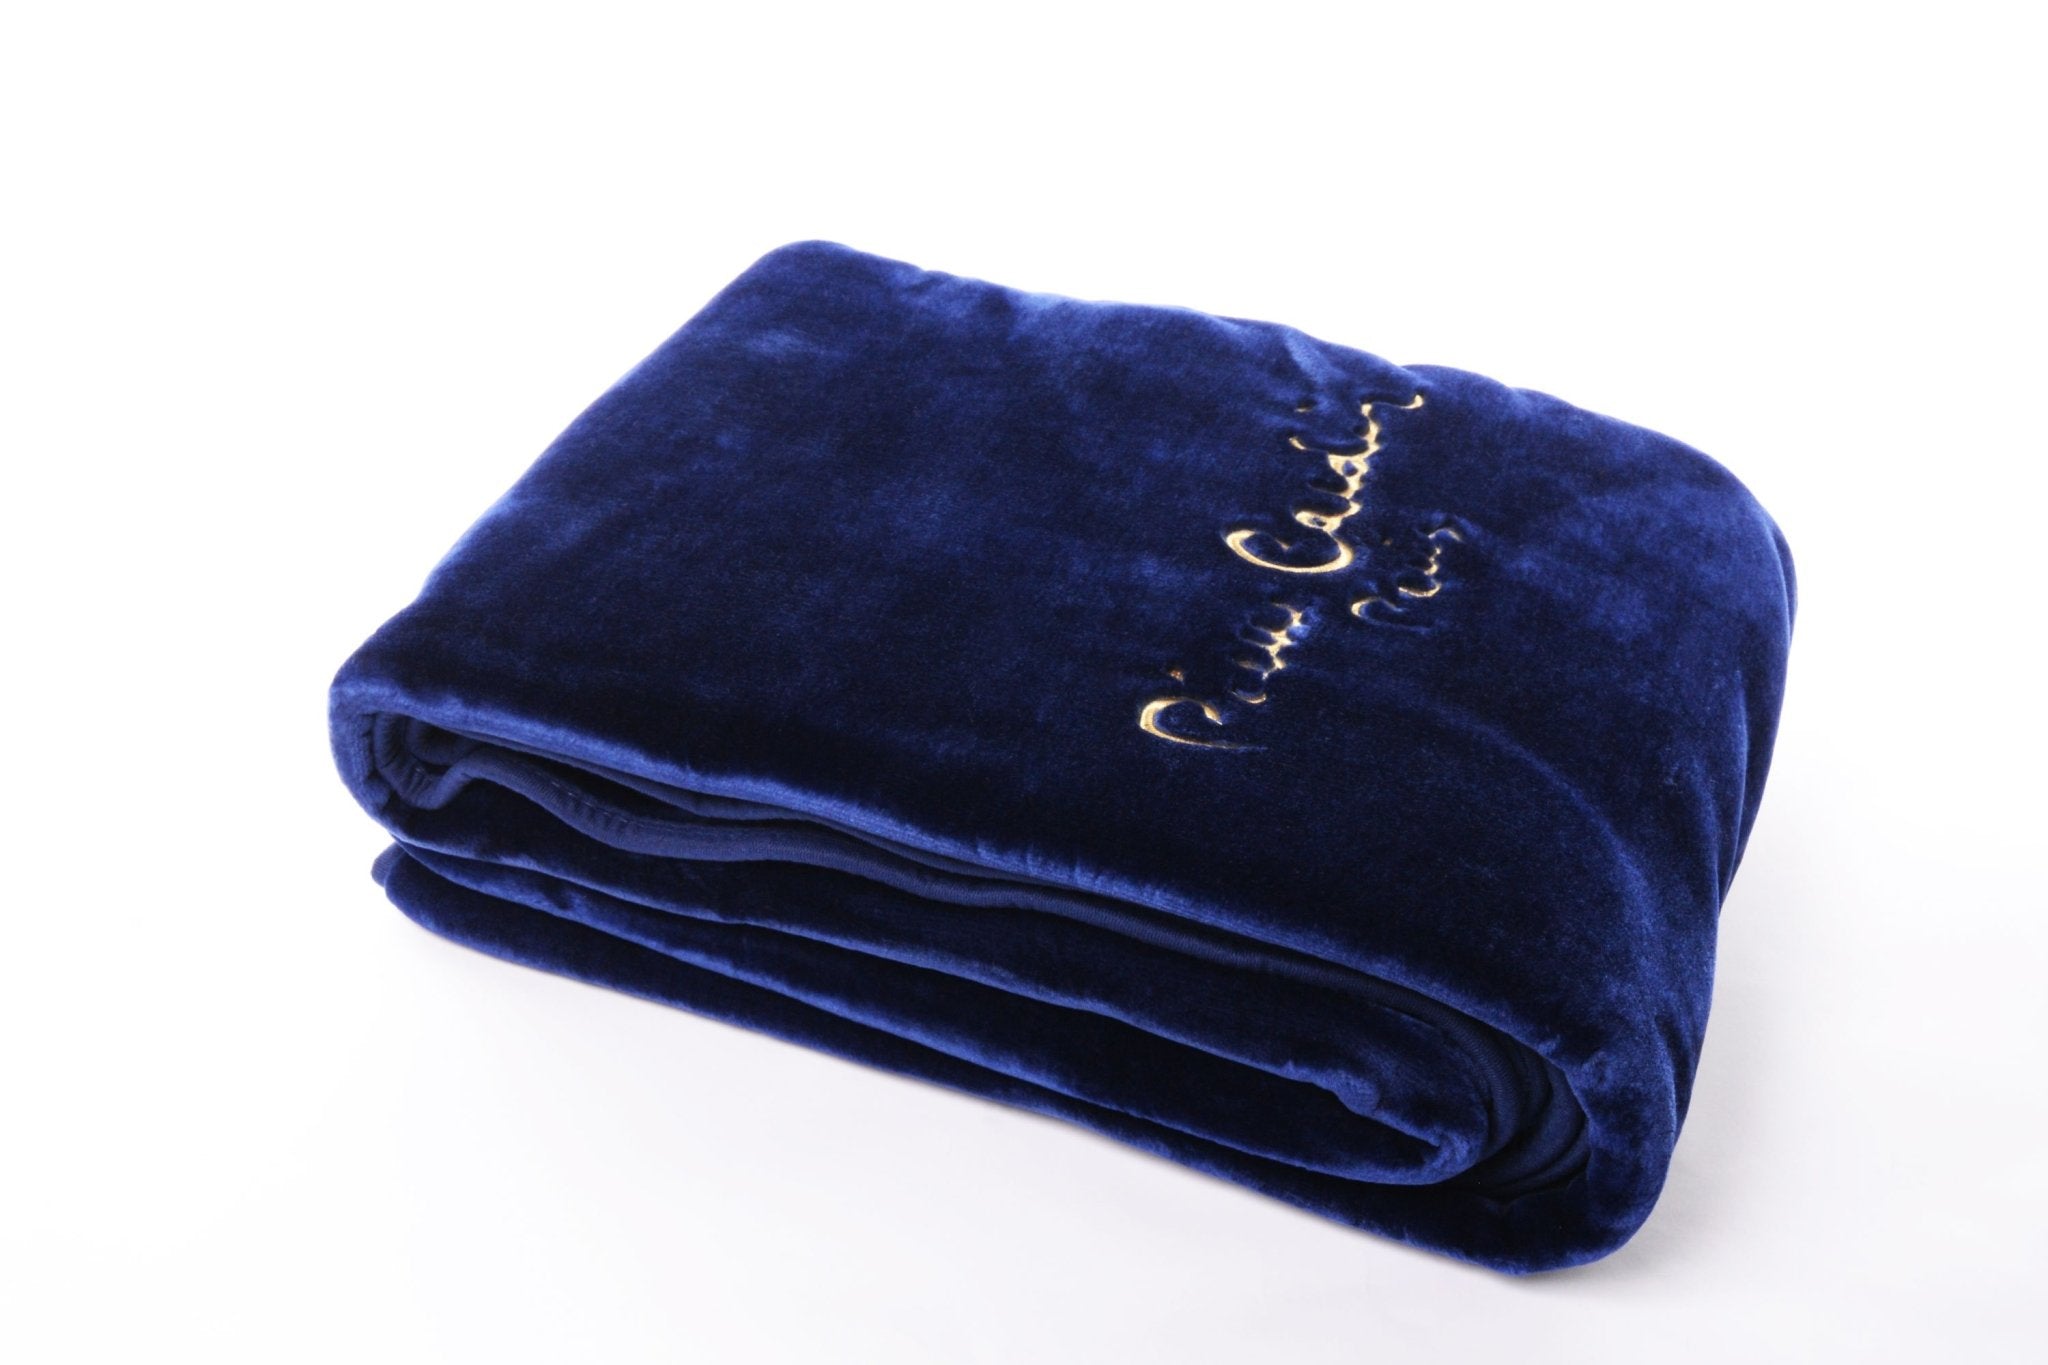 Cobertor Pierre Cardin Azul Navy - Larbonito